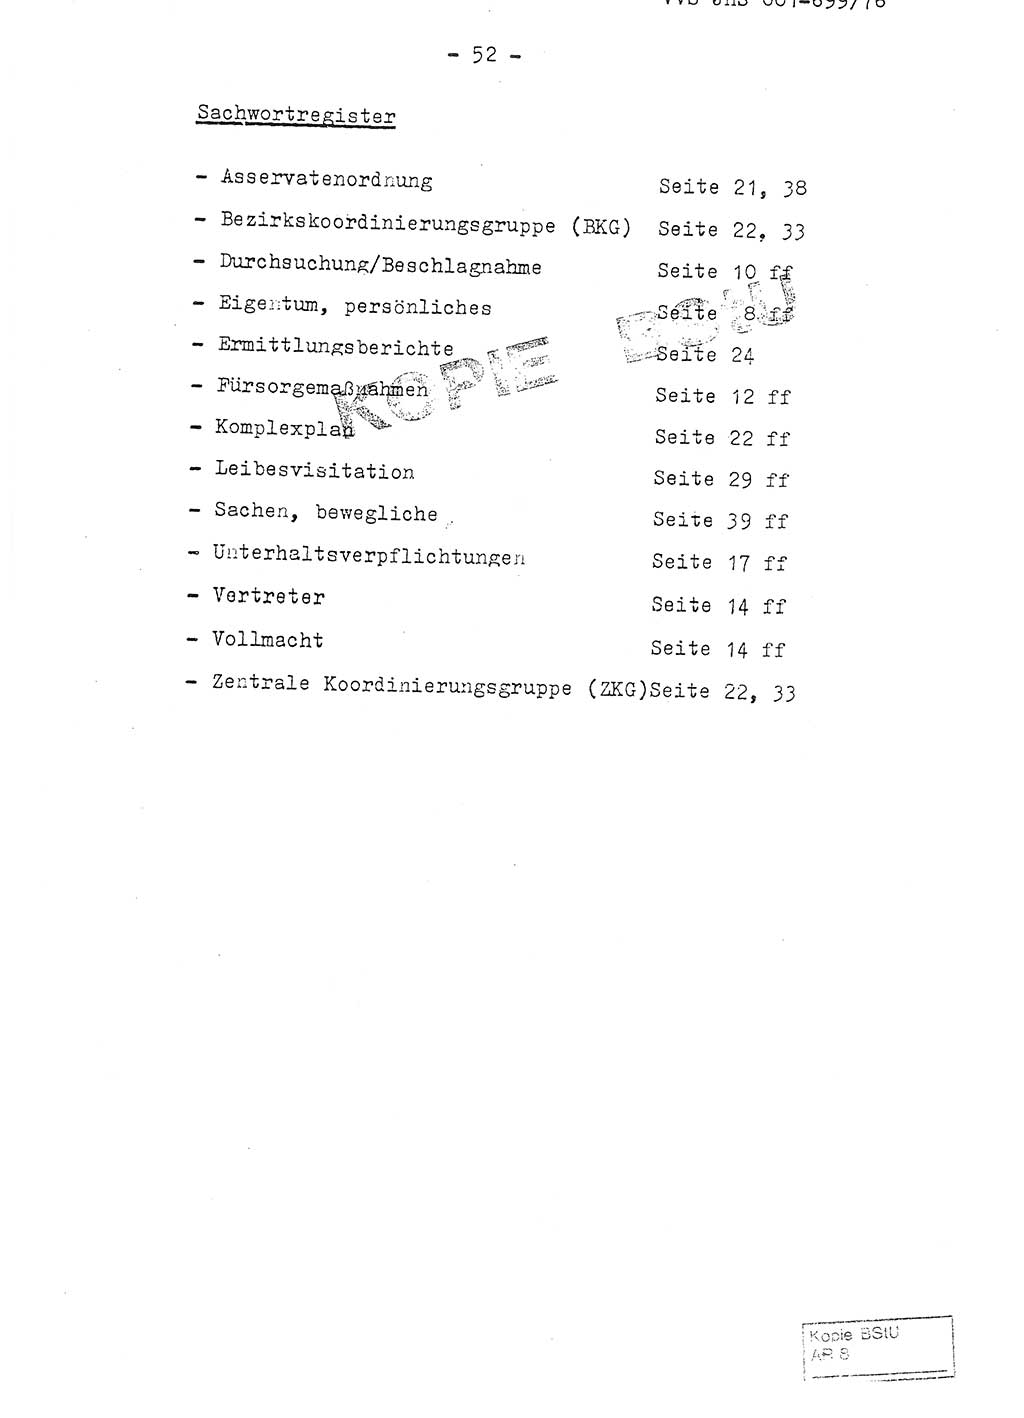 Fachschulabschlußarbeit Leutnant Volkmar Taubert (HA Ⅸ/9), Leutnant Axel Naumann (HA Ⅸ/9), Unterleutnat Detlef Debski (HA Ⅸ/9), Ministerium für Staatssicherheit (MfS) [Deutsche Demokratische Republik (DDR)], Juristische Hochschule (JHS), Vertrauliche Verschlußsache (VVS) 001-699/76, Potsdam 1976, Seite 52 (FS-Abschl.-Arb. MfS DDR JHS VVS 001-699/76 1976, S. 52)